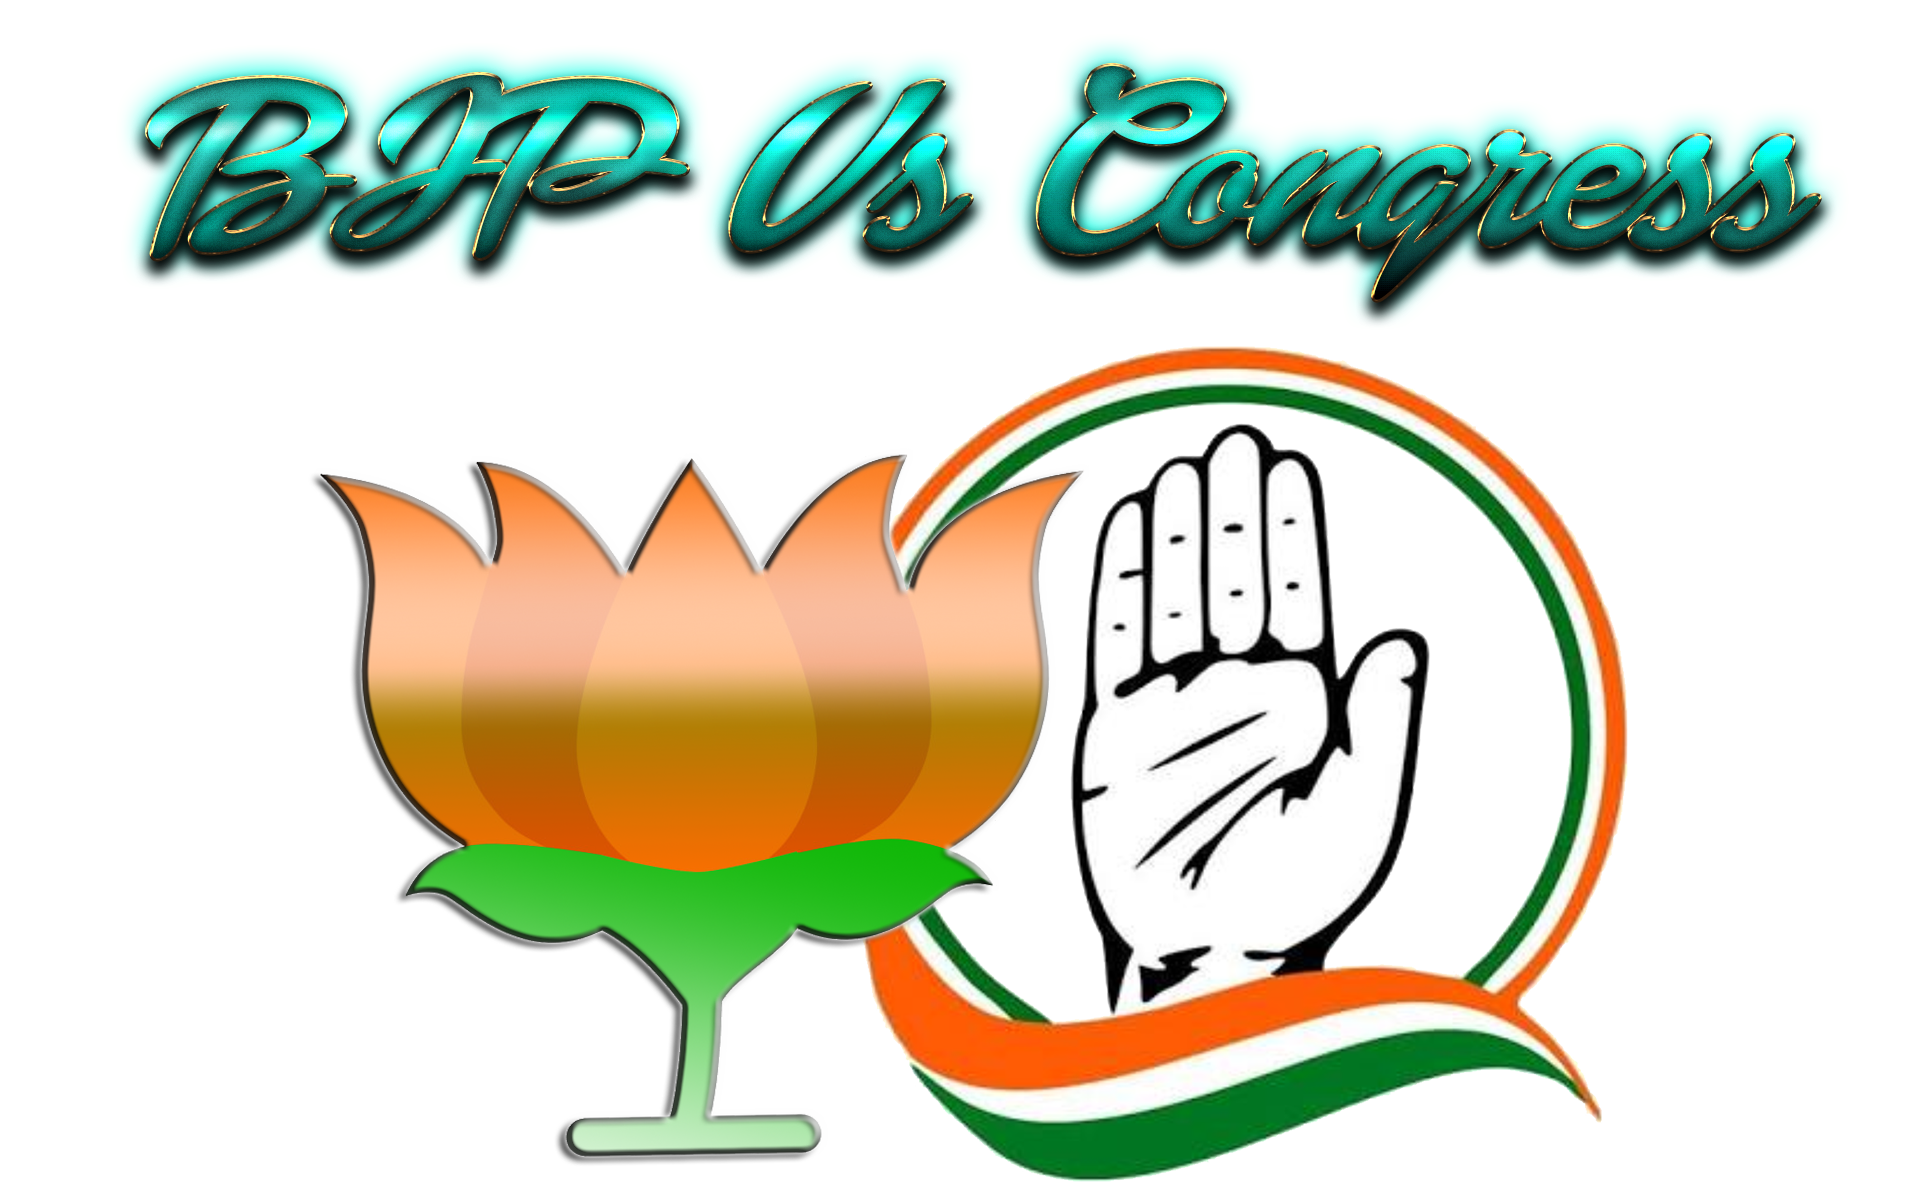 Bjp Vs Congress Png Image Download - Symbol Congress Logo Png - HD Wallpaper 